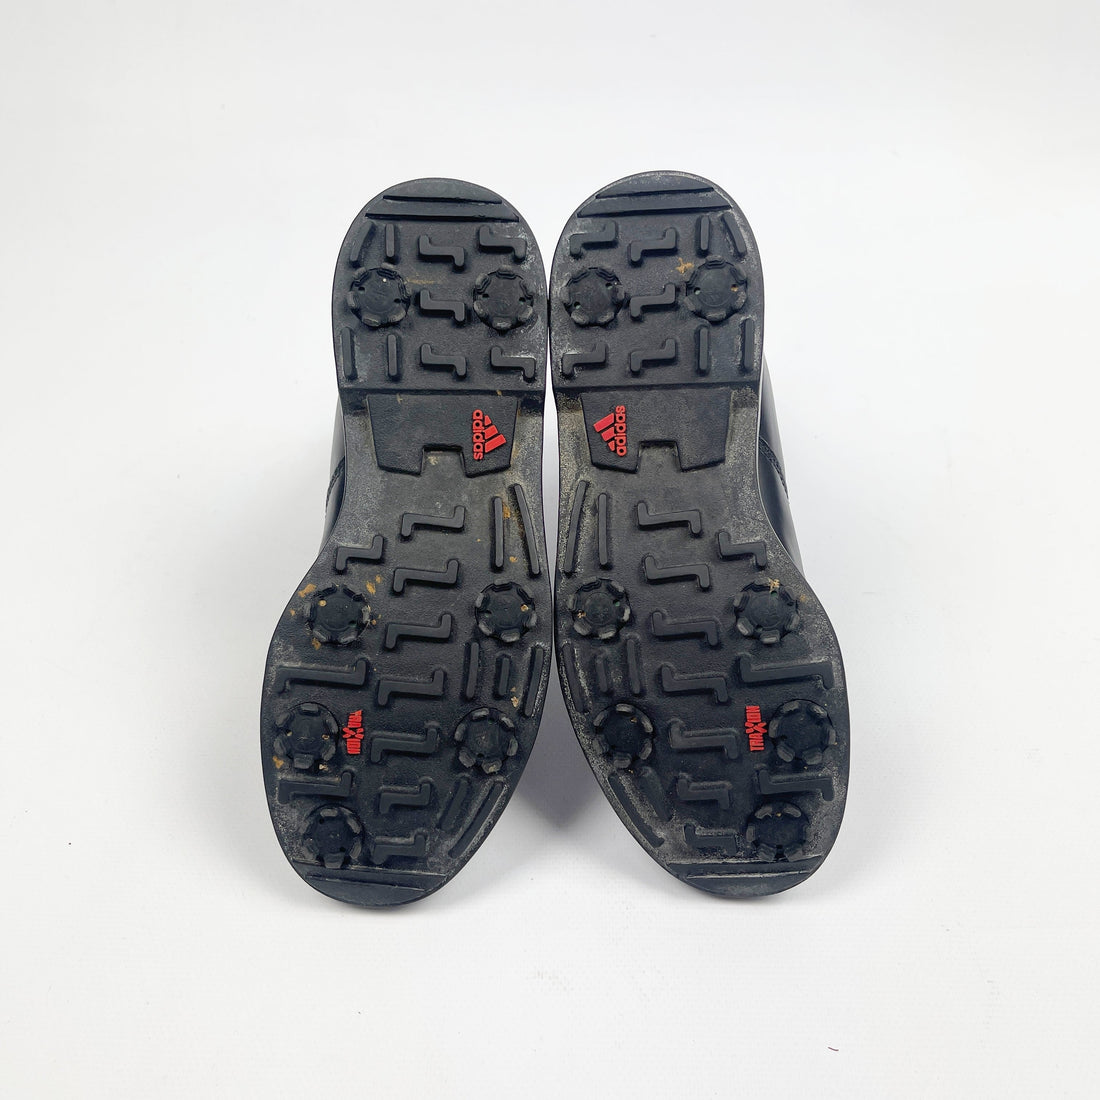 Adidas All Terrain Black Boots 2001